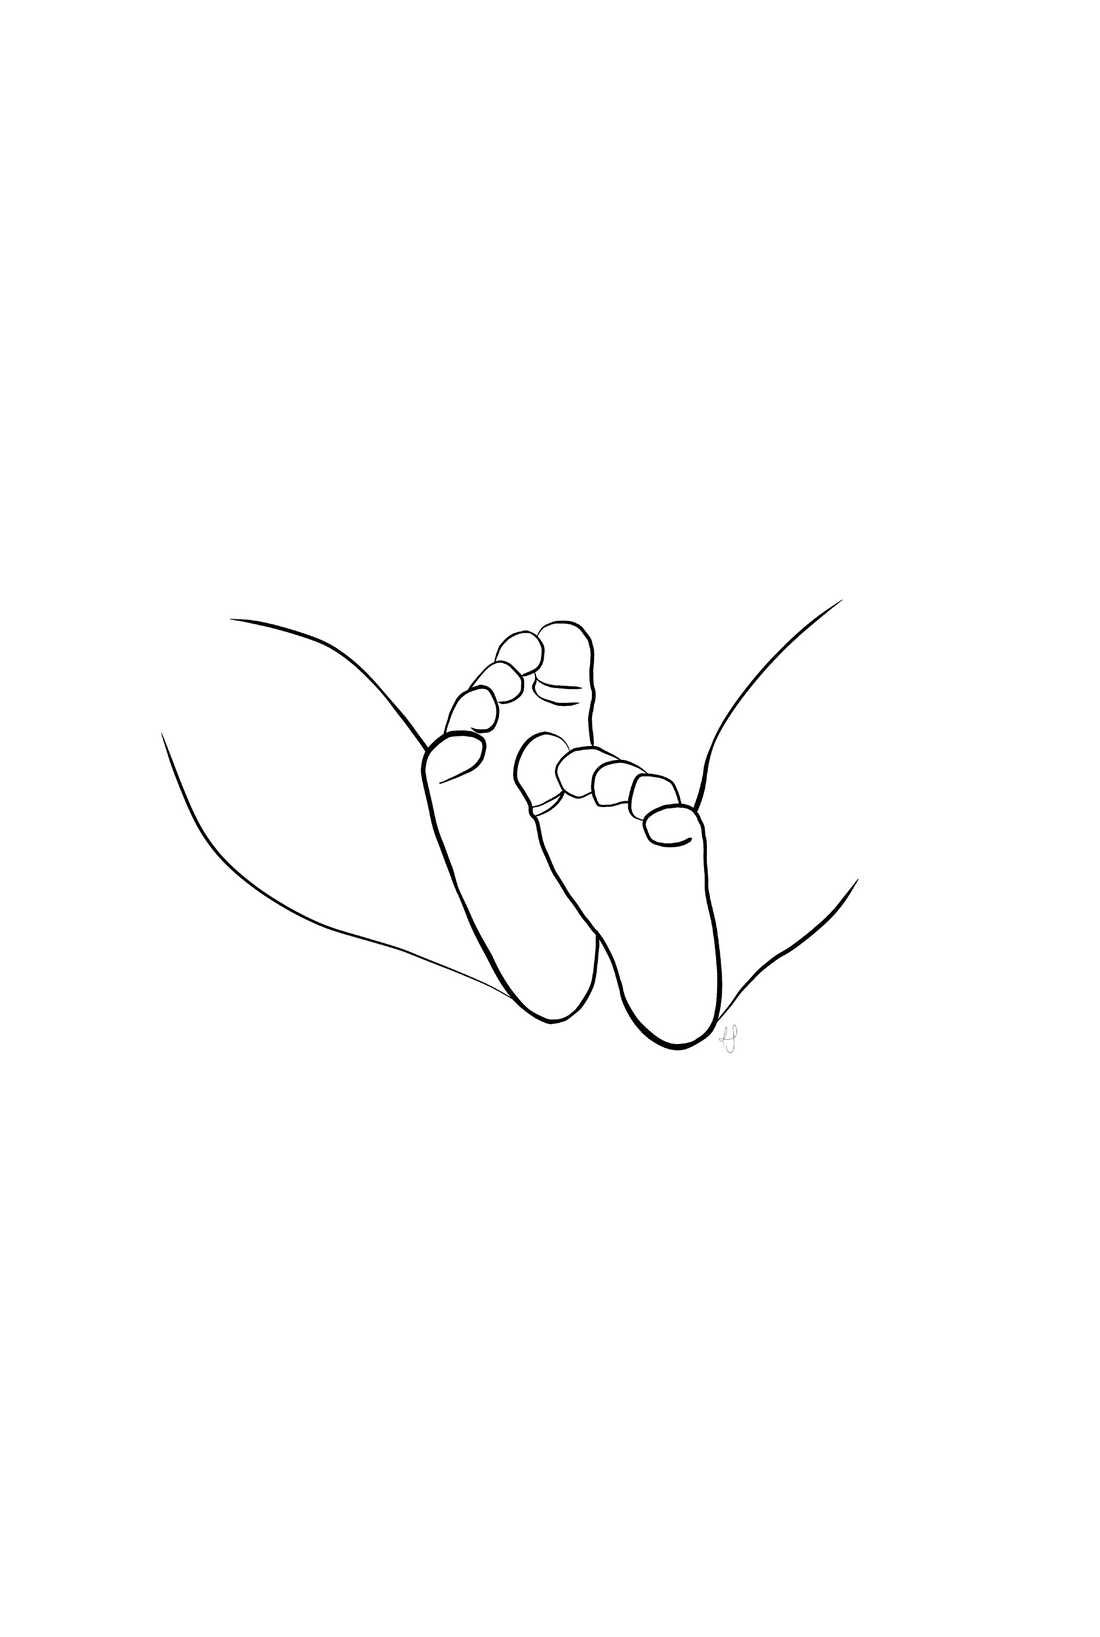 Teeny tiny toes - print